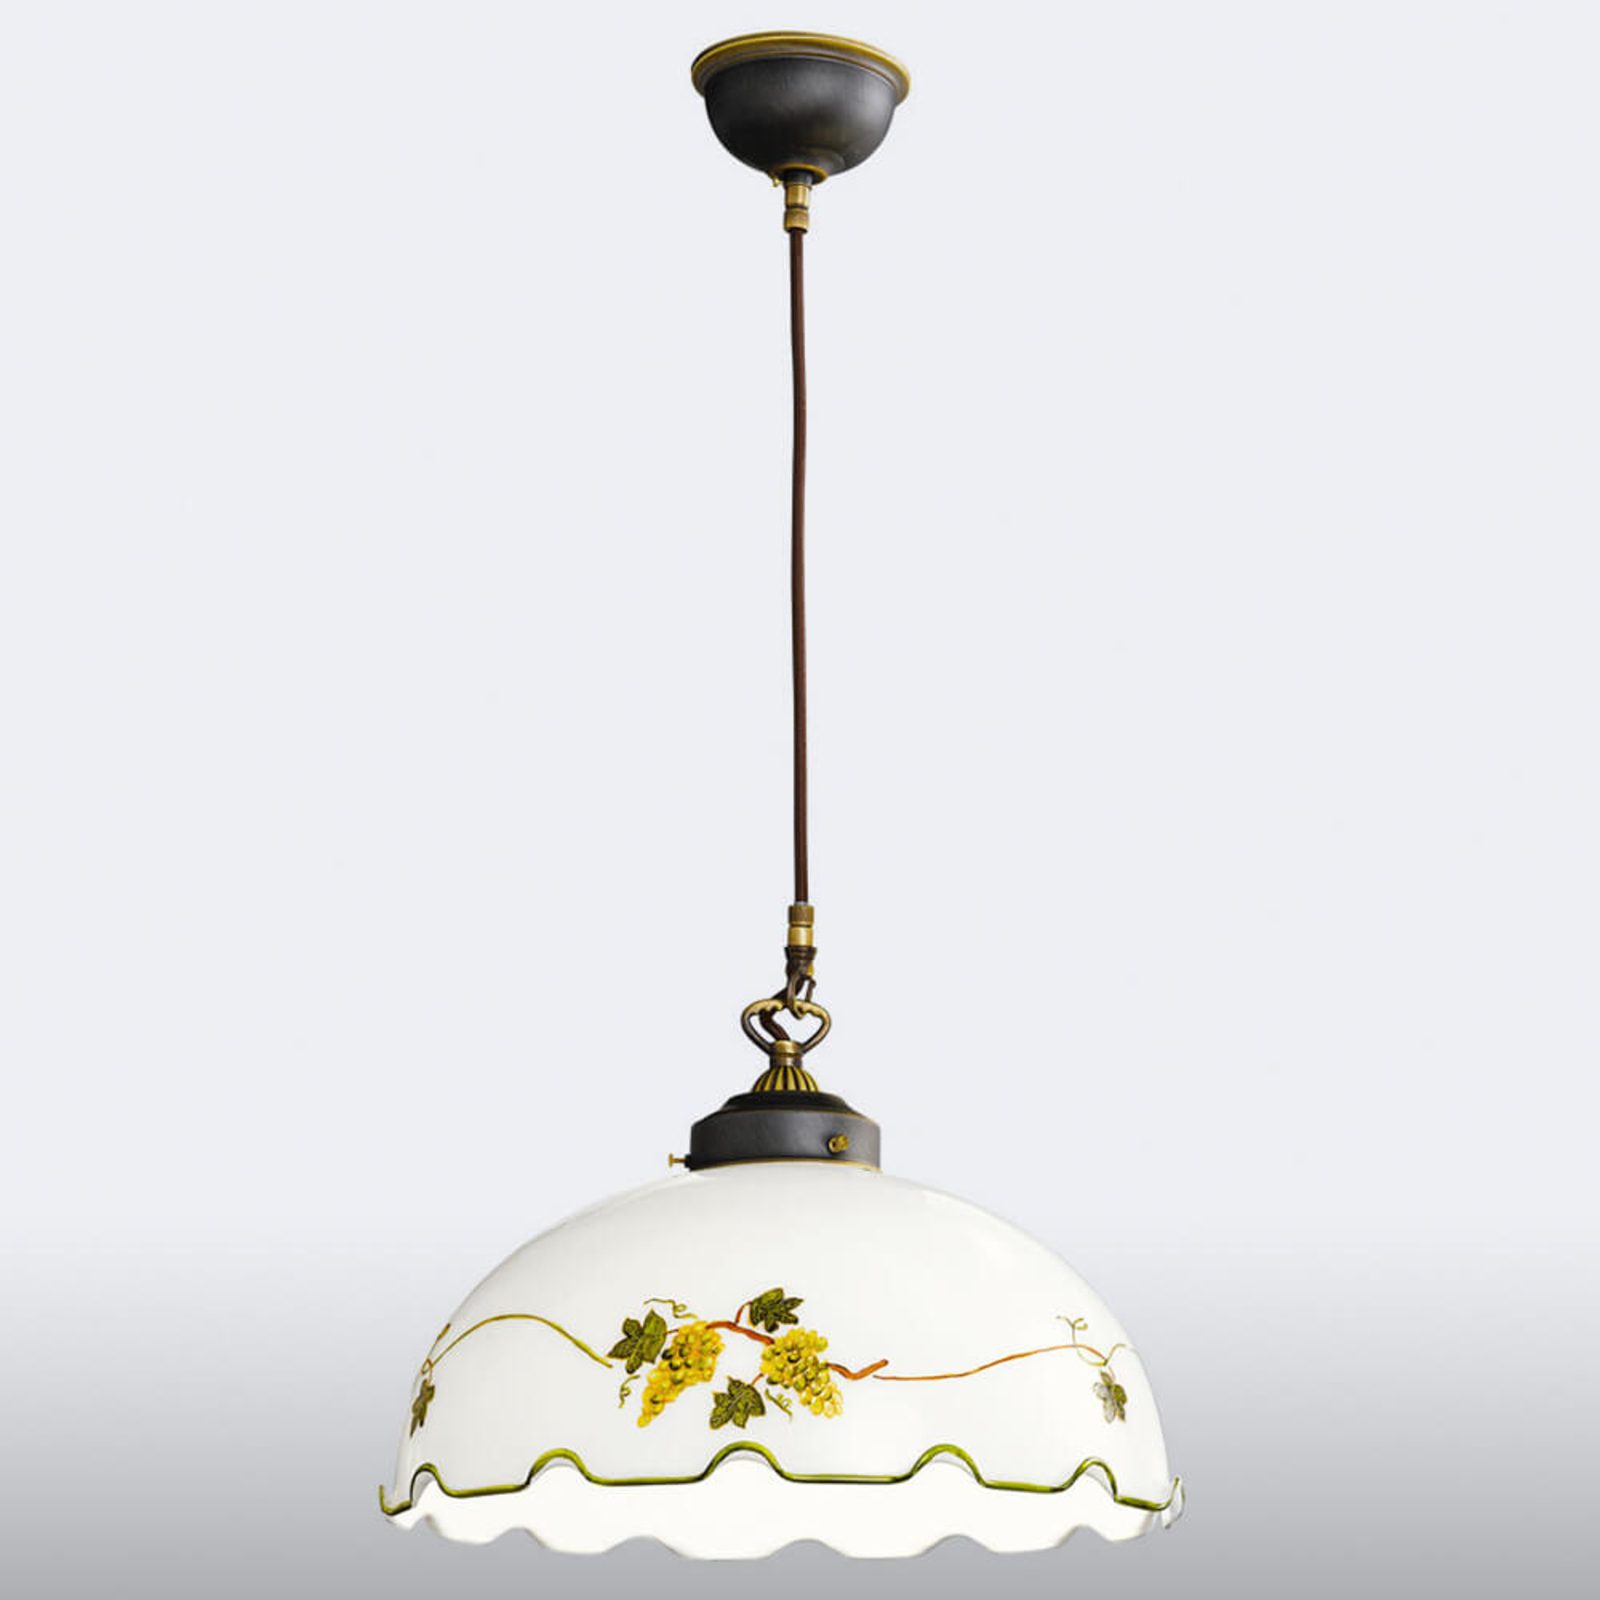 Nonna hanglamp met druivenmotief, handgeschilderd